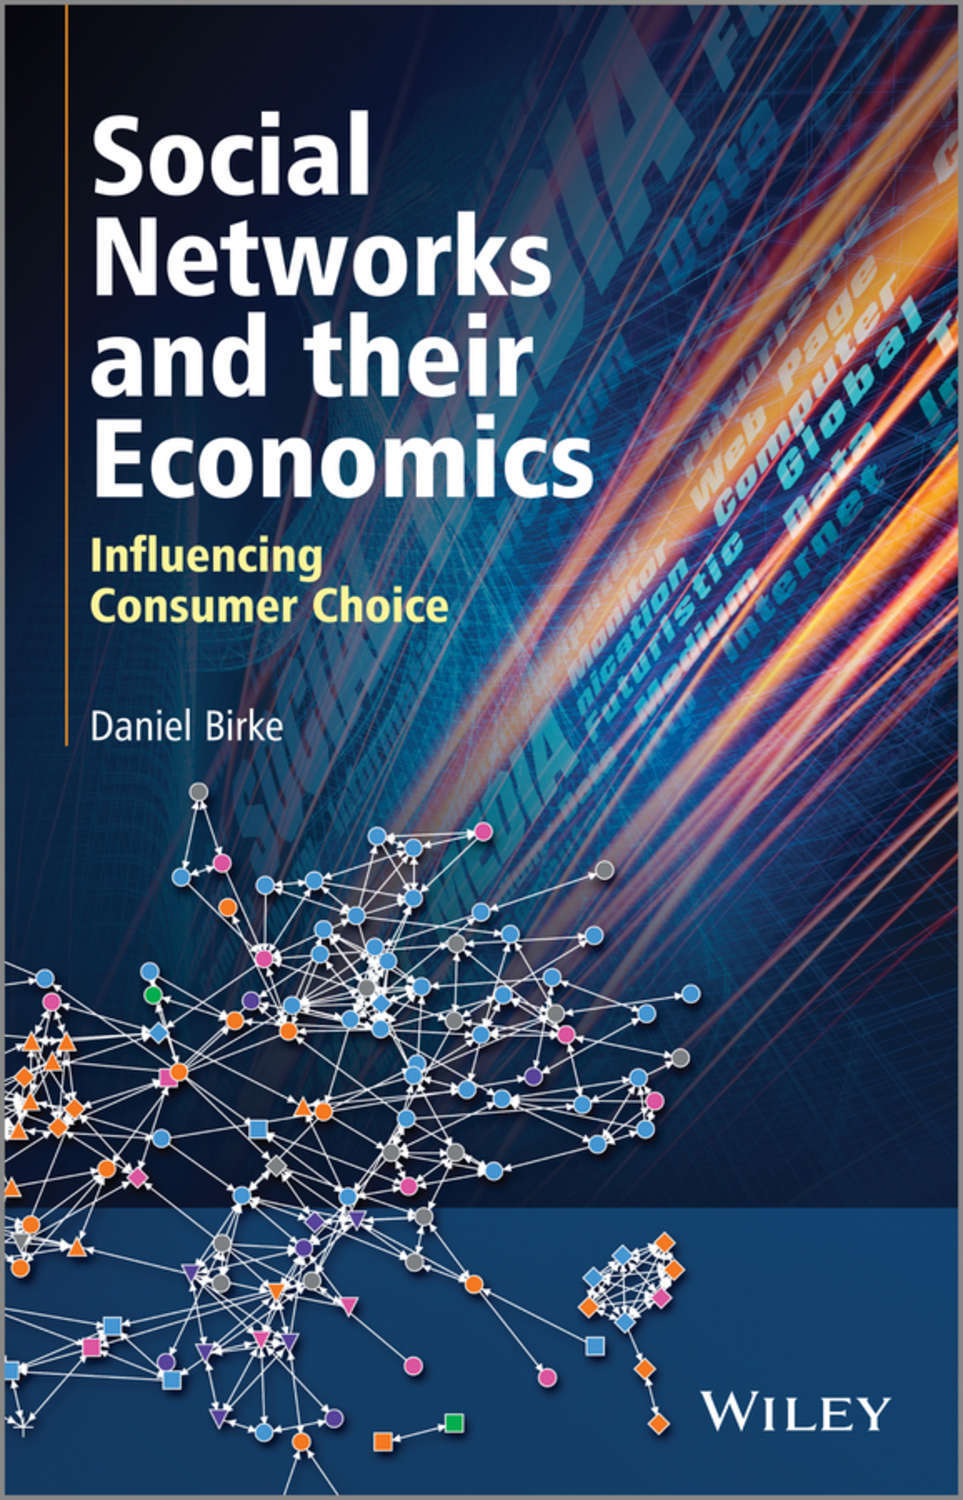 Читать книгу социальные сети. Книга social. Economics. Consumer choice. Ion-social book.